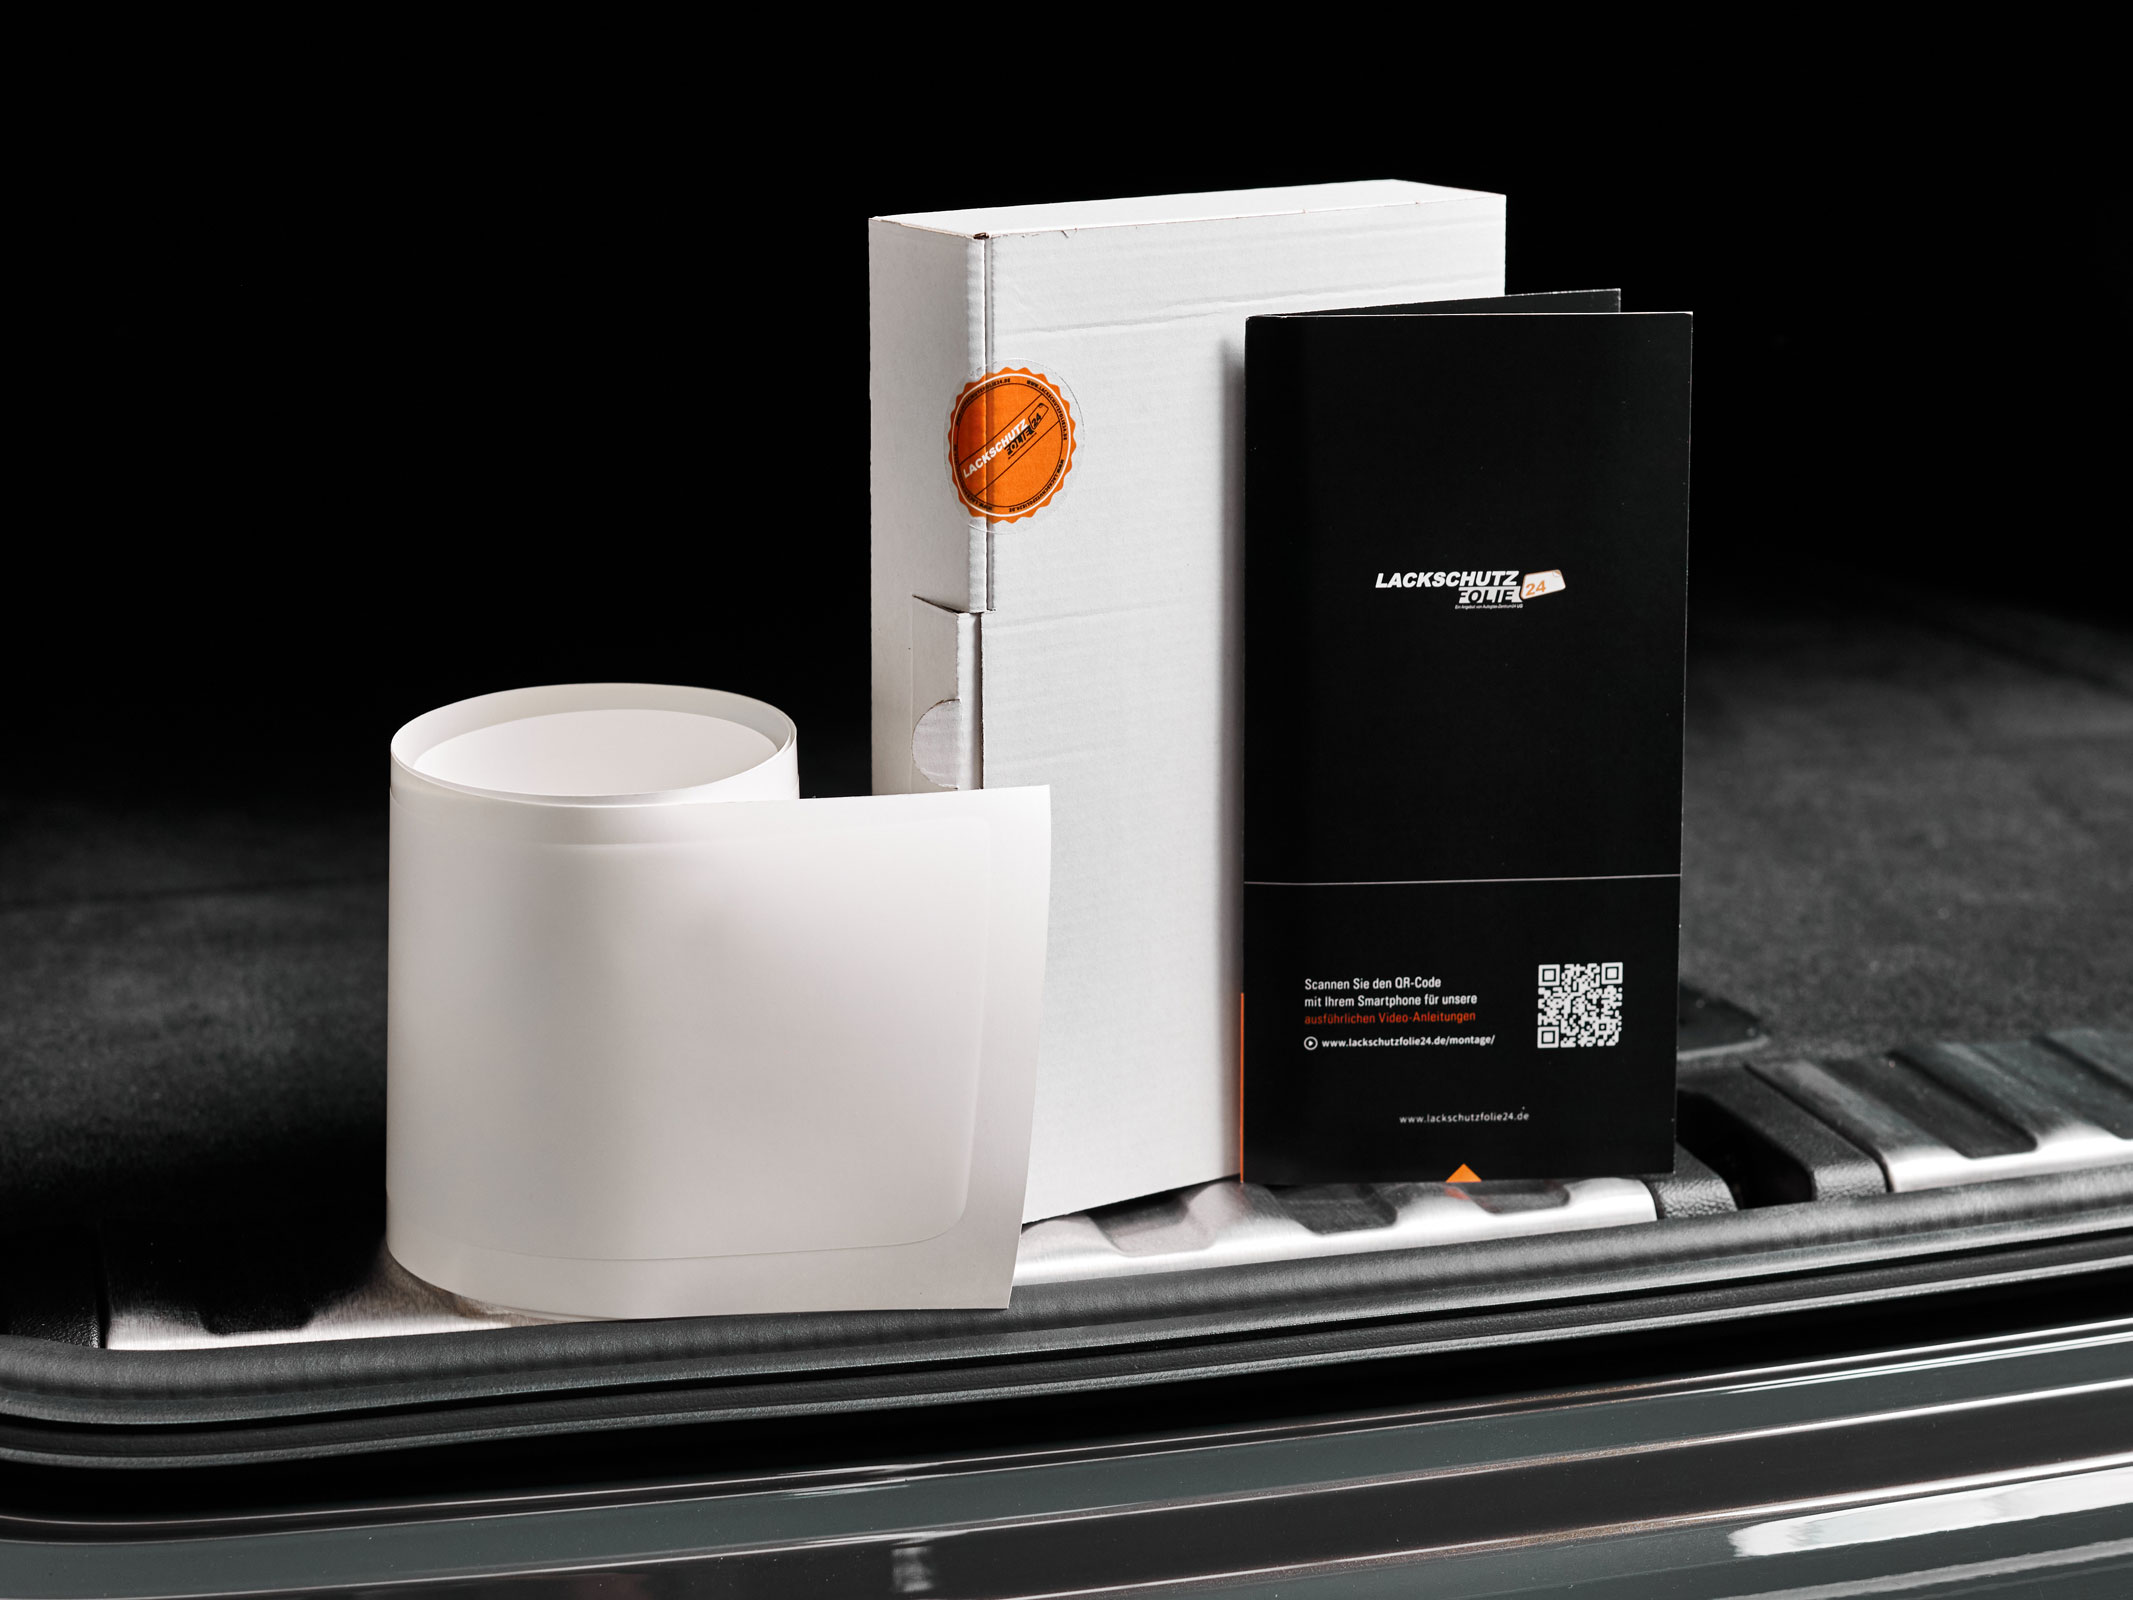 Ladekantenschutzfolie - Transparent Glatt MATT 110 µm stark  für Seat Toledo Typ KG, BJ 2012-2019